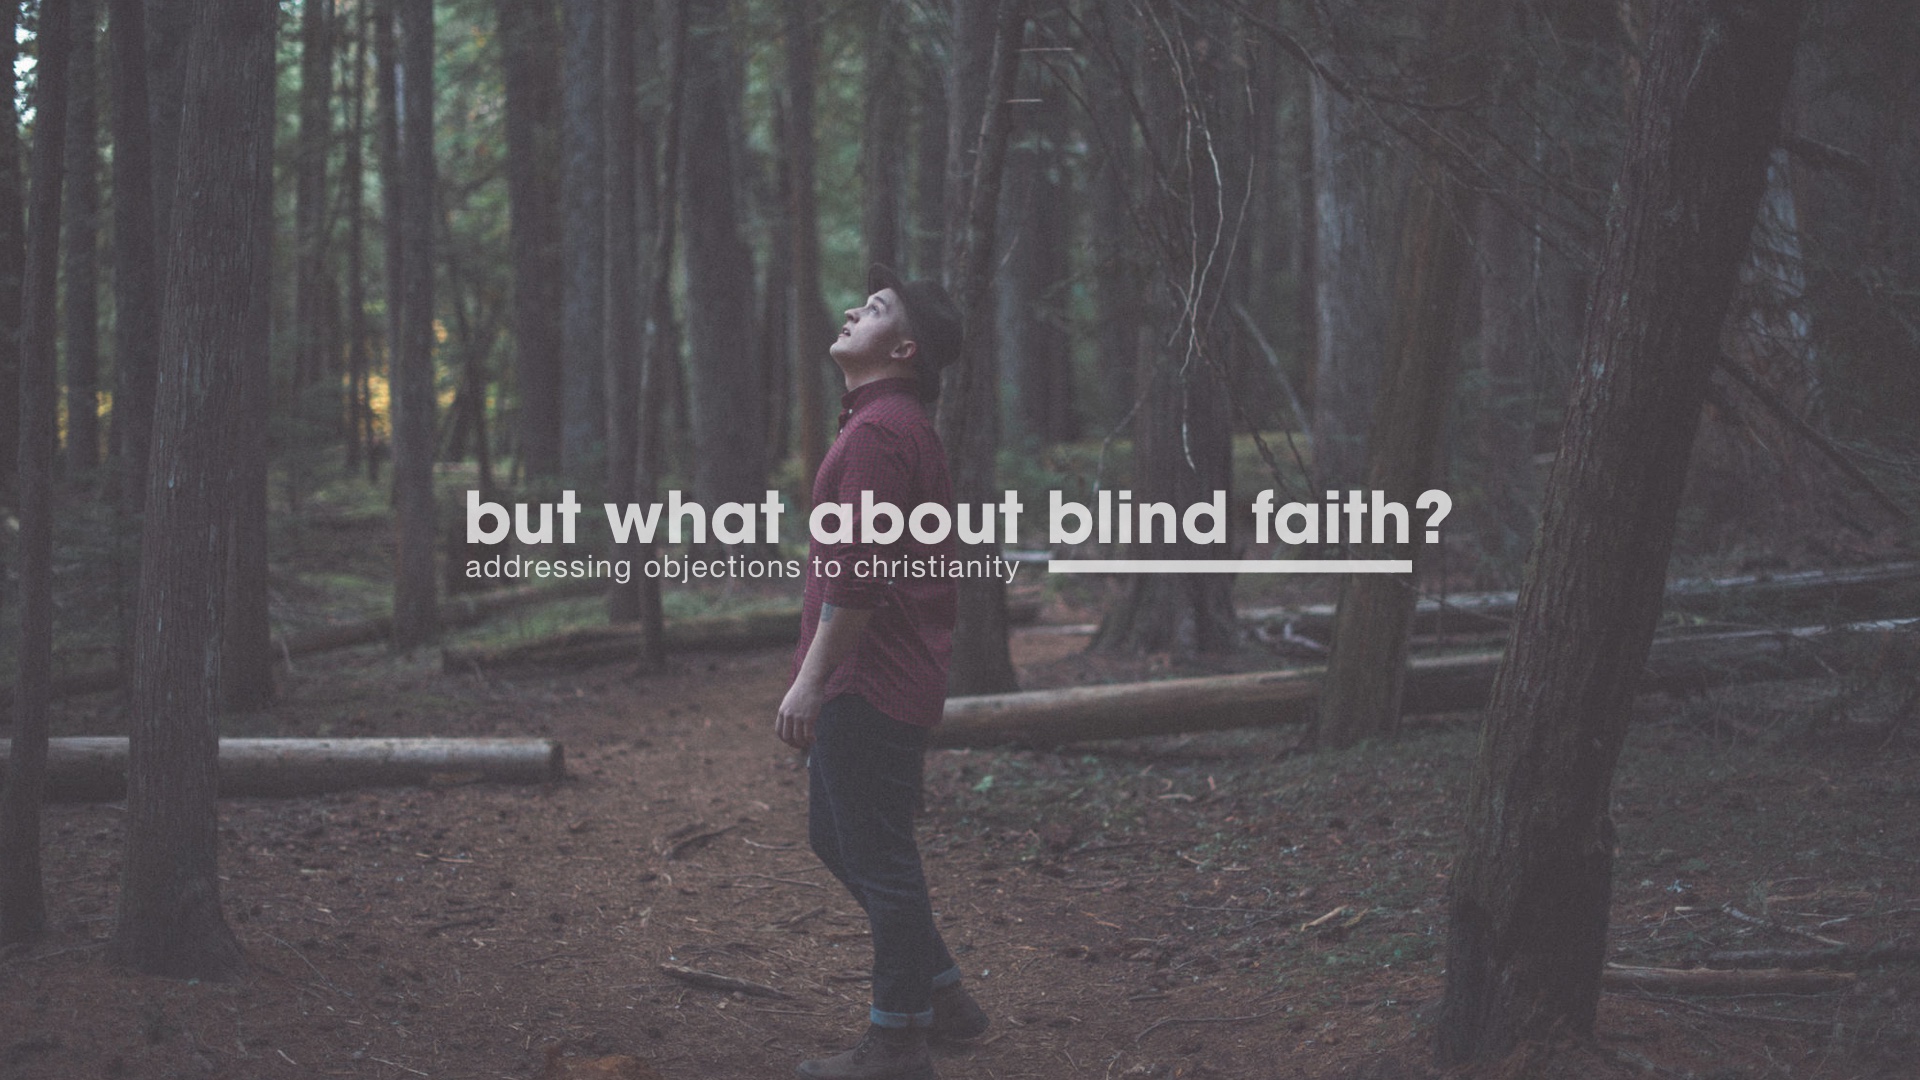 Blind Faith?